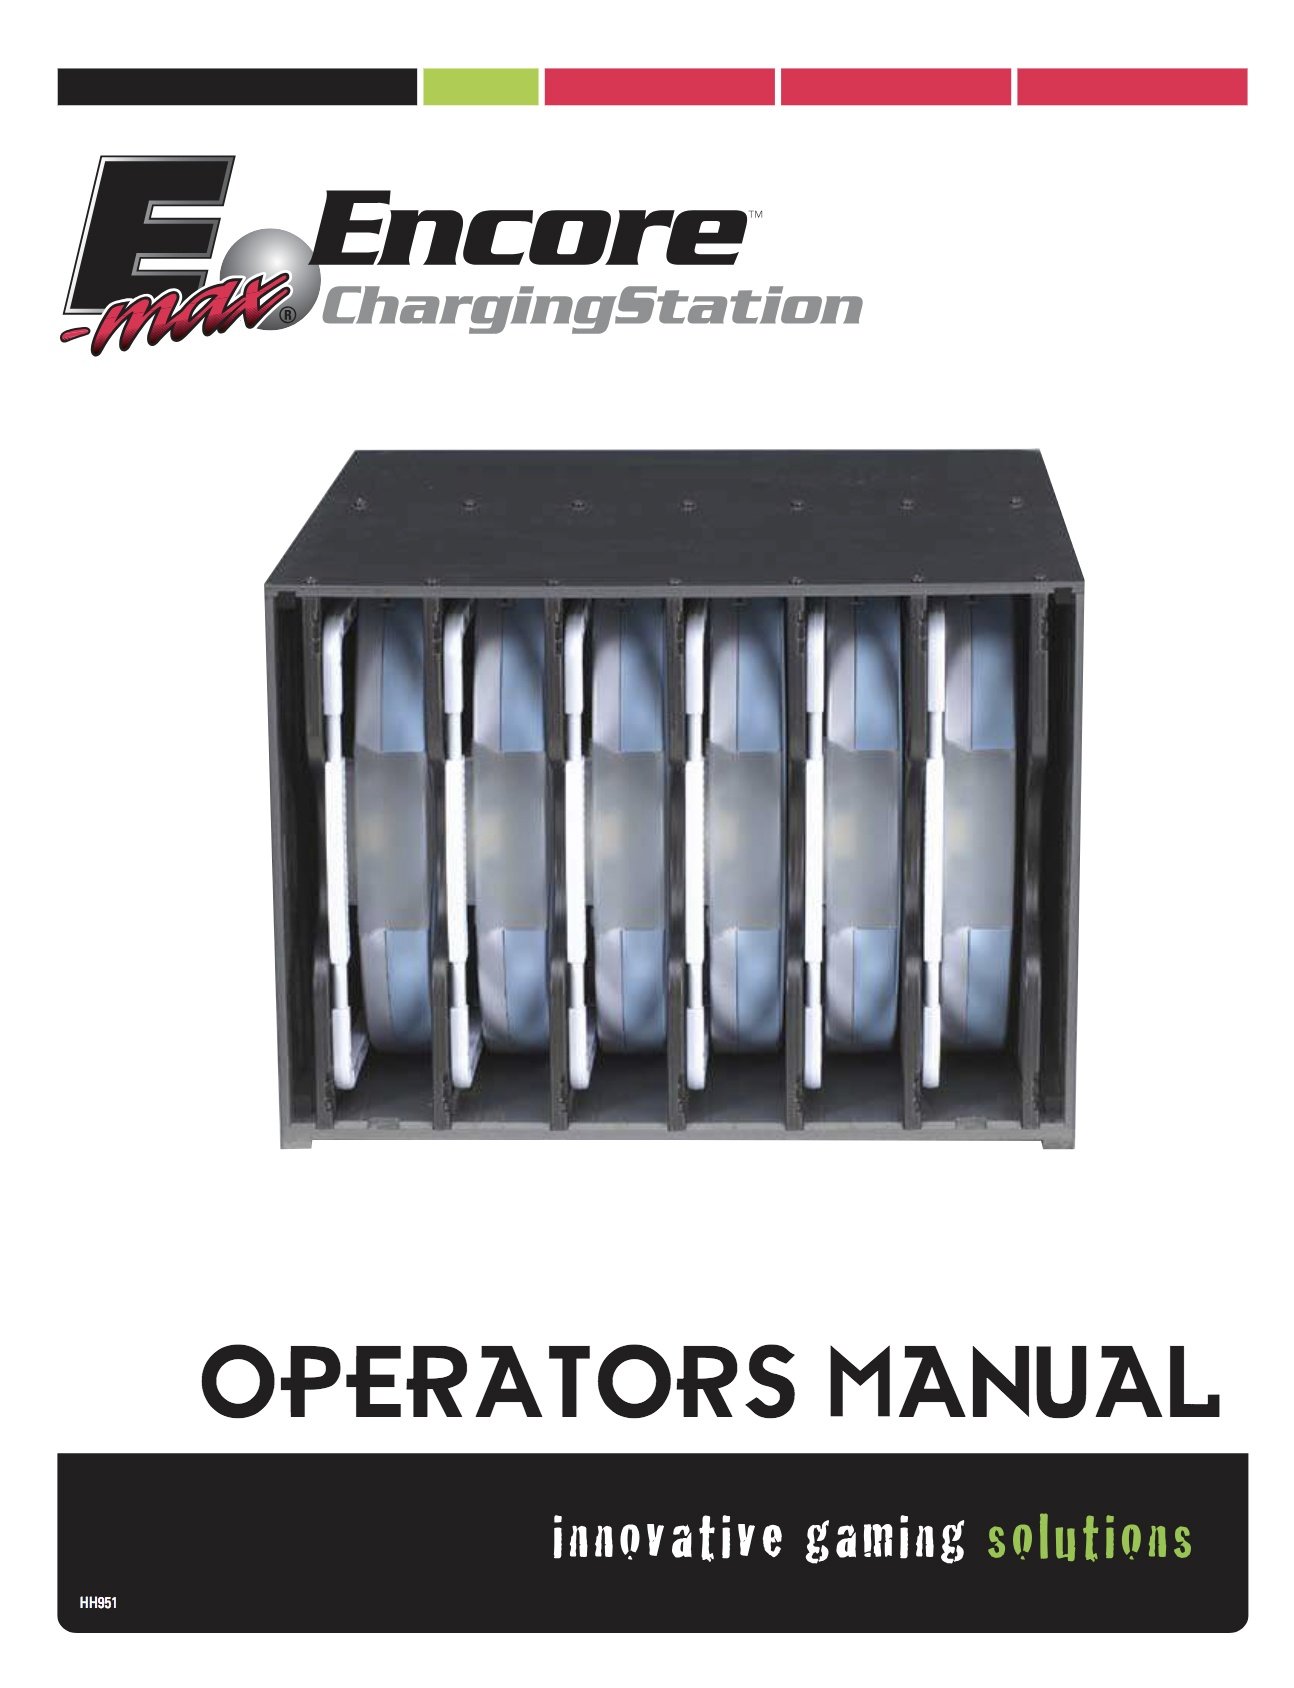 Encore Operators Manual Equipment Manuals